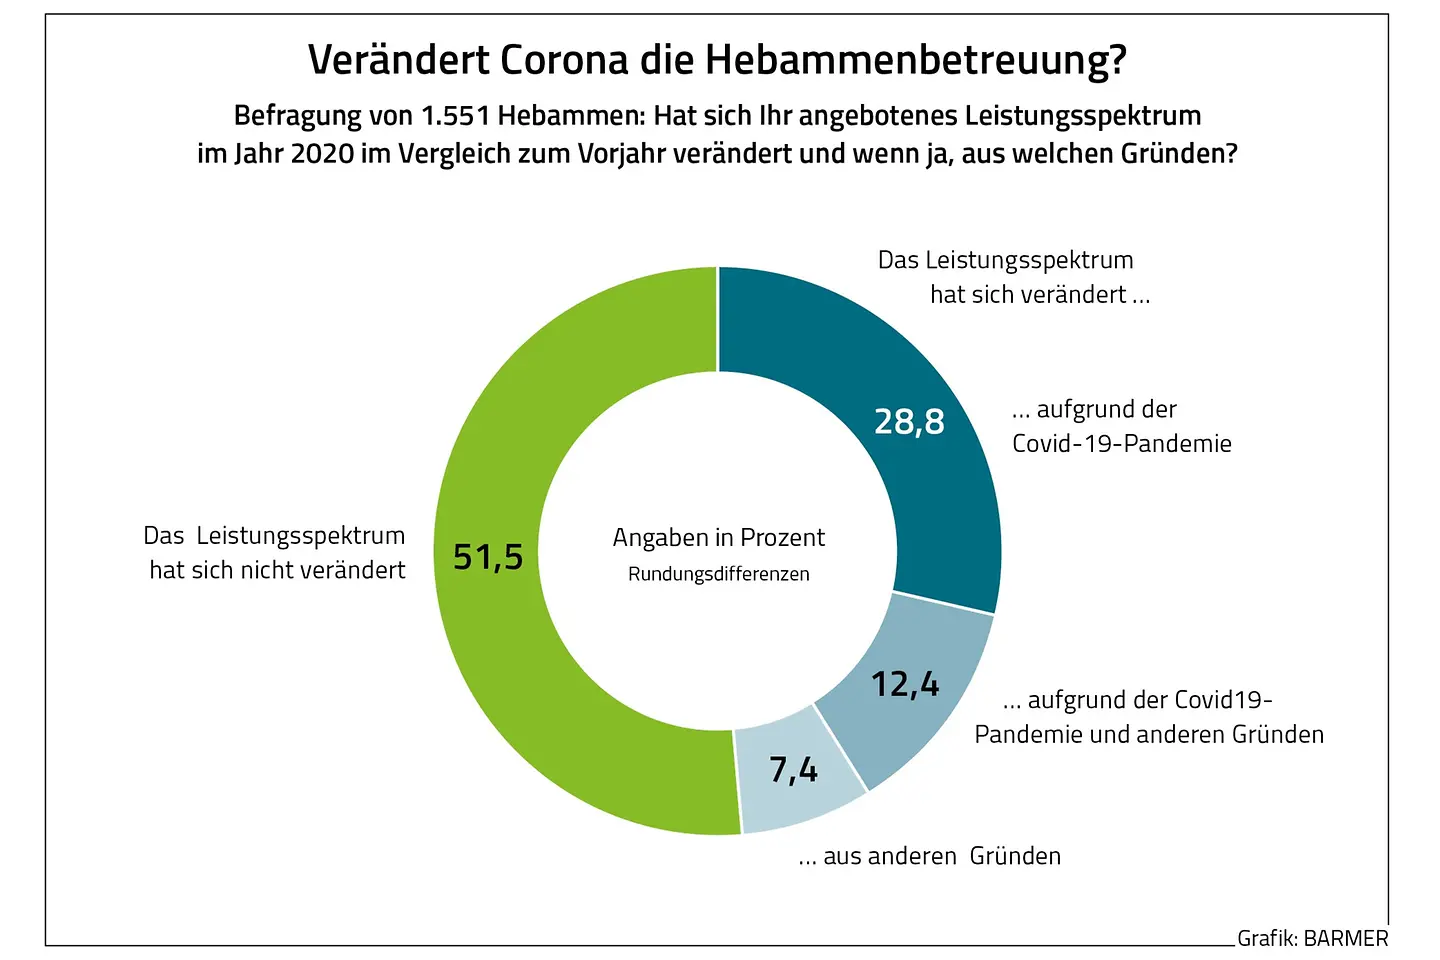 Die Grafik zeigt die Ergebnisse einer Befragung von Hebammen, inwiefern Corona die Hebammenbetreuung verändert hat.